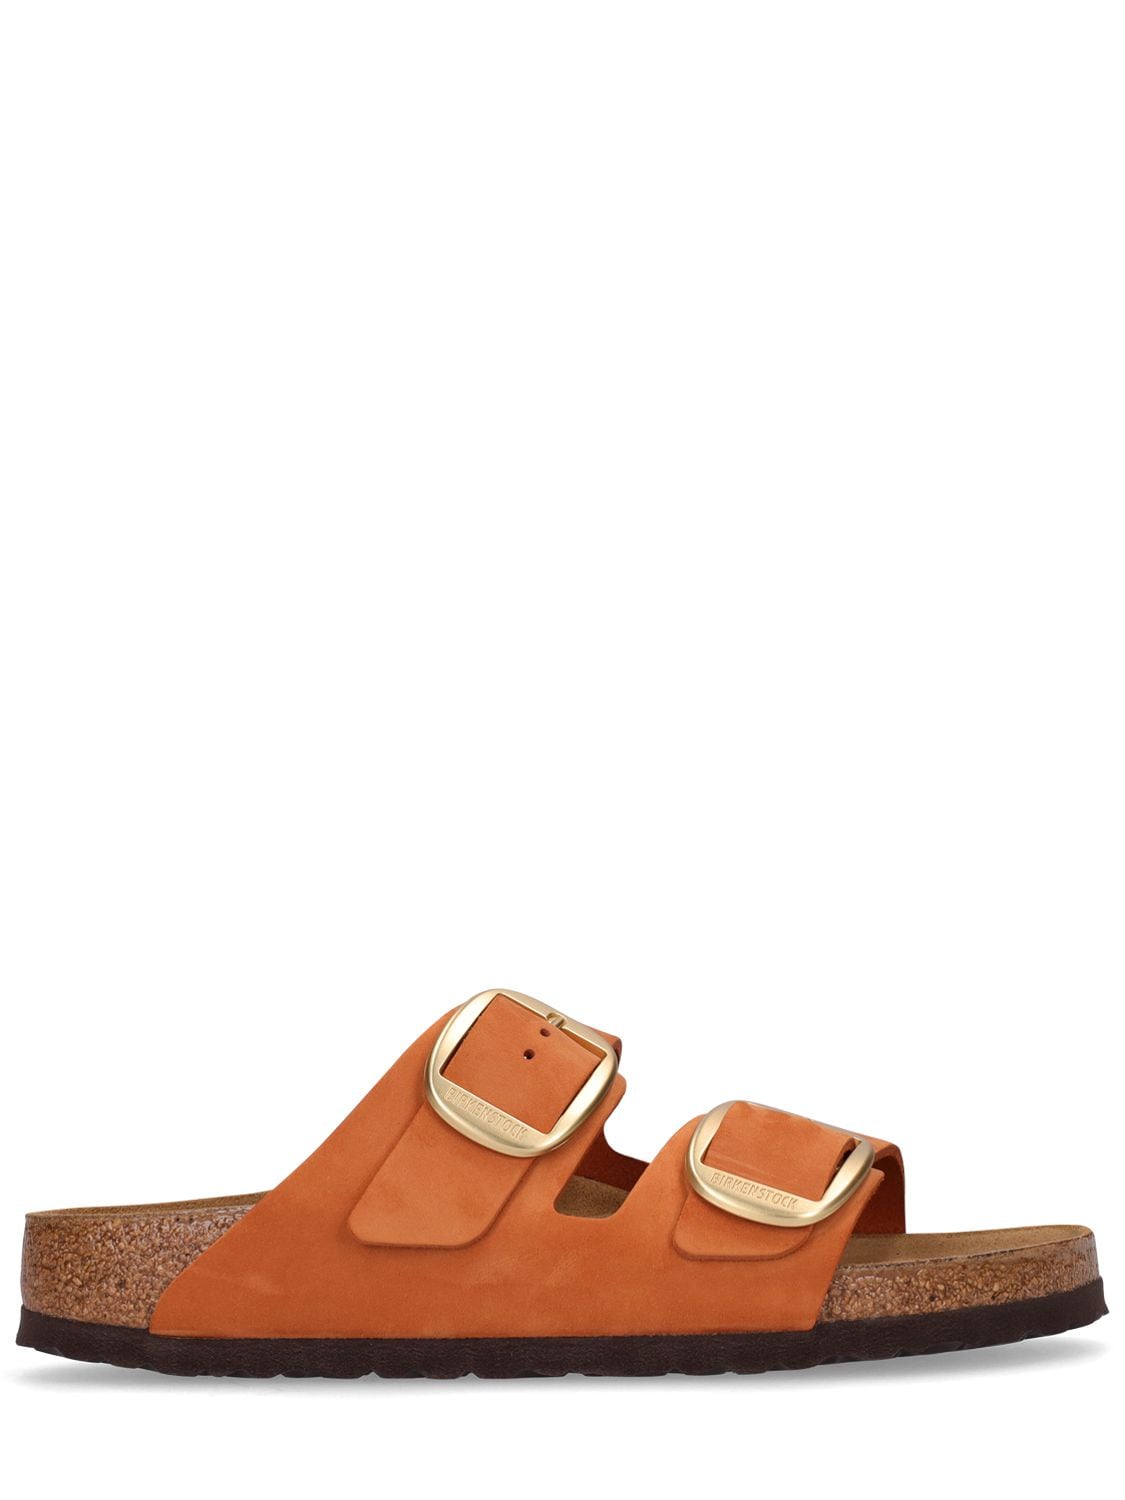 Birkenstock Arizona Big Buckle Sandals In Orange | ModeSens